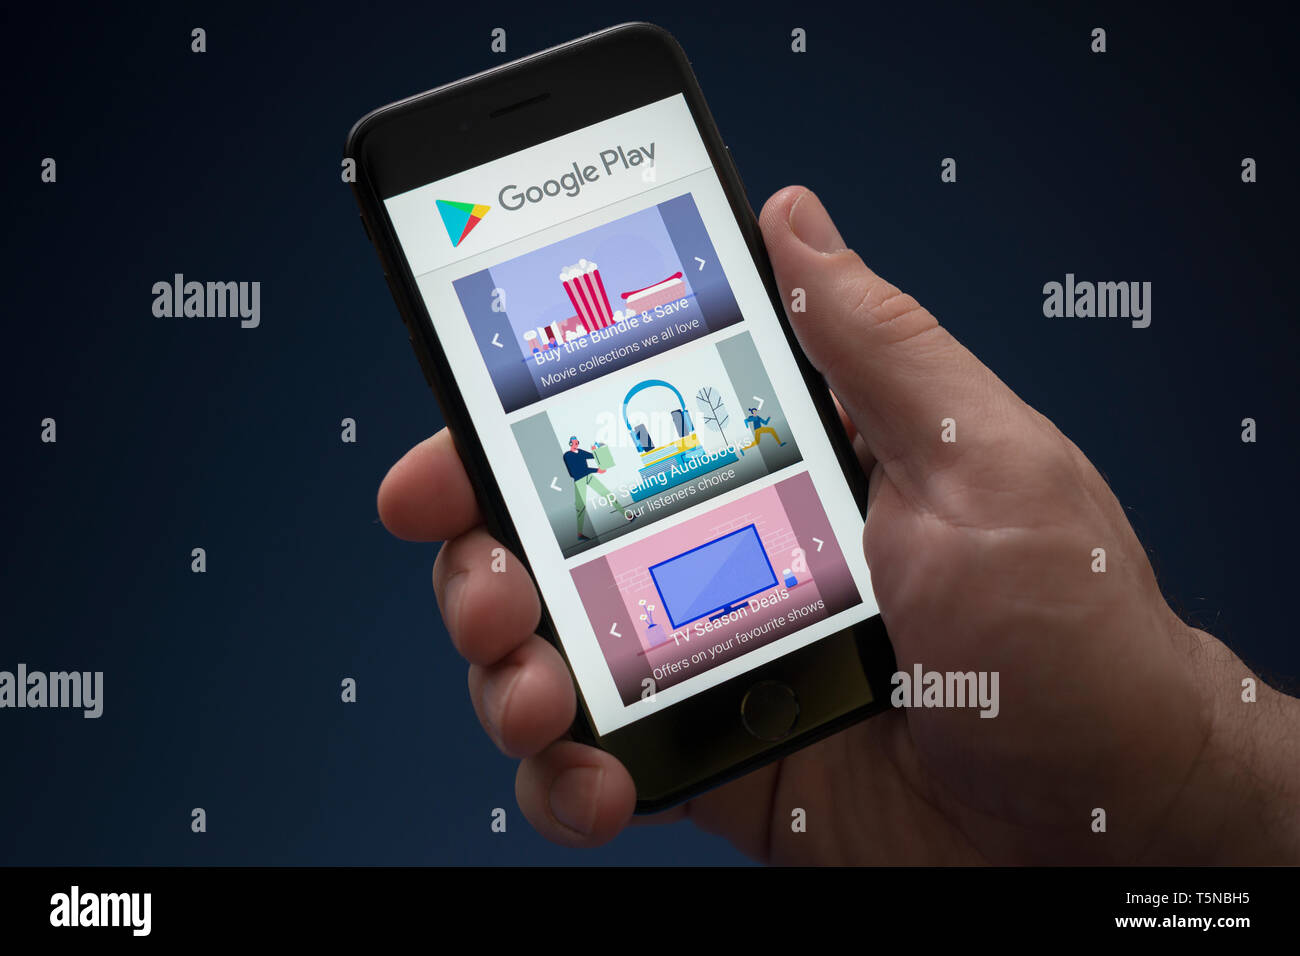 Un hombre mira el iPhone que muestra el logotipo de Google Play (uso Editorial solamente). Foto de stock